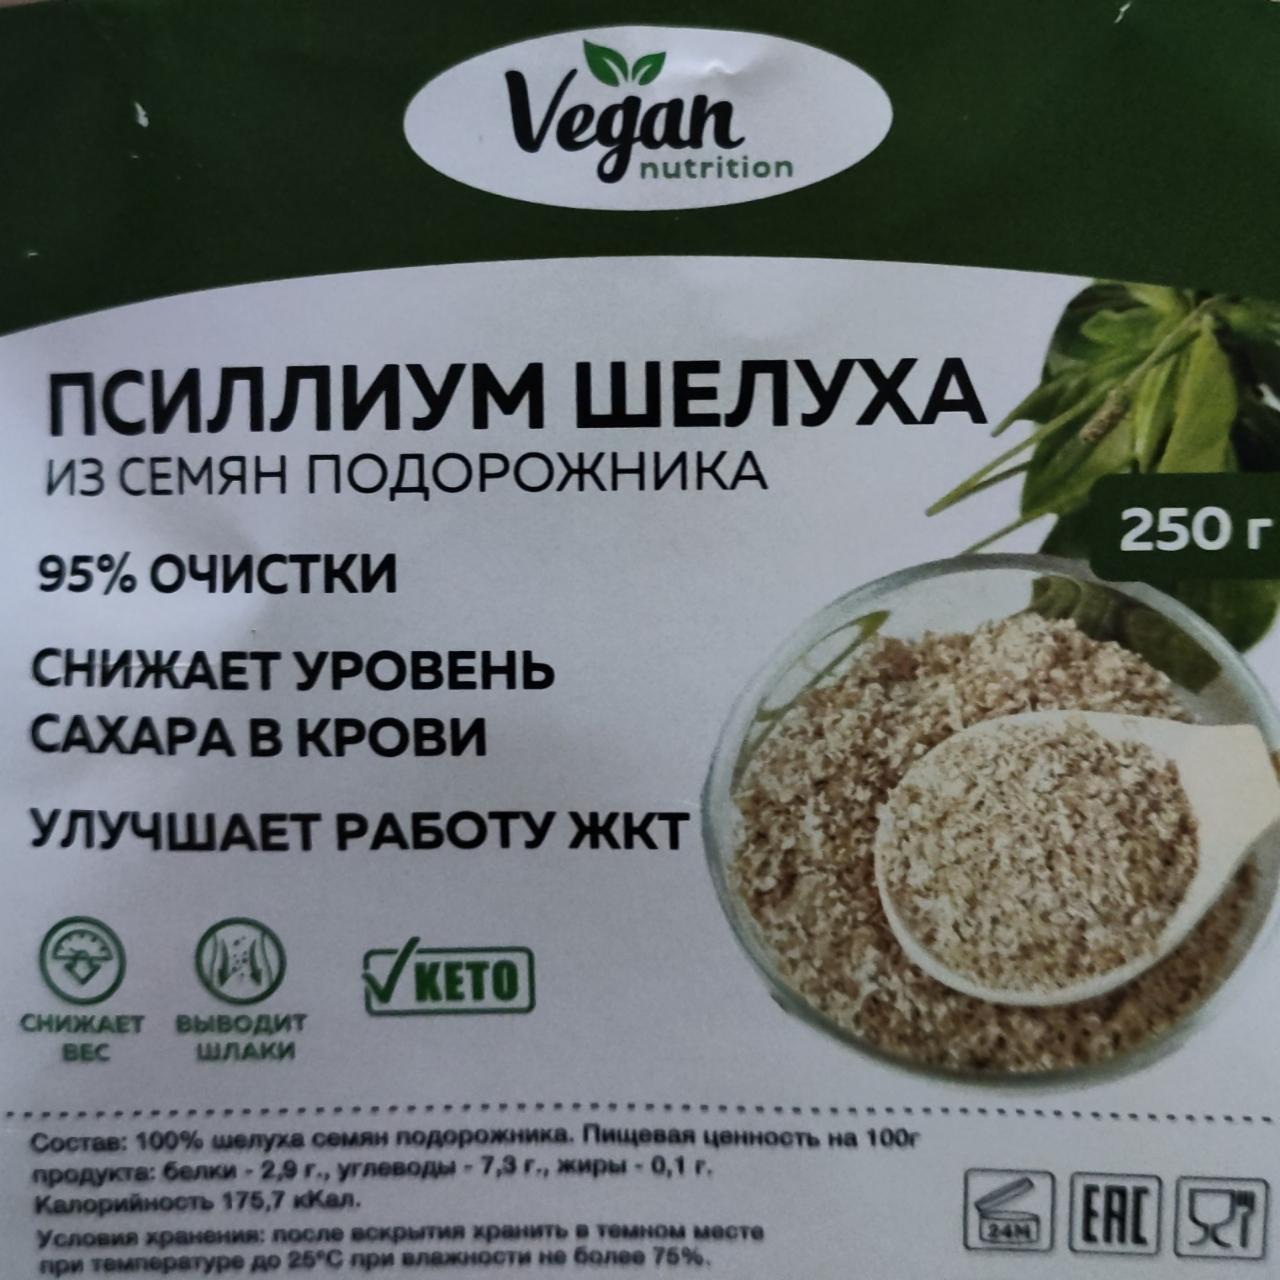 Фото - Псиллиум Шулуха из семян подорожника Vegan Nutrition